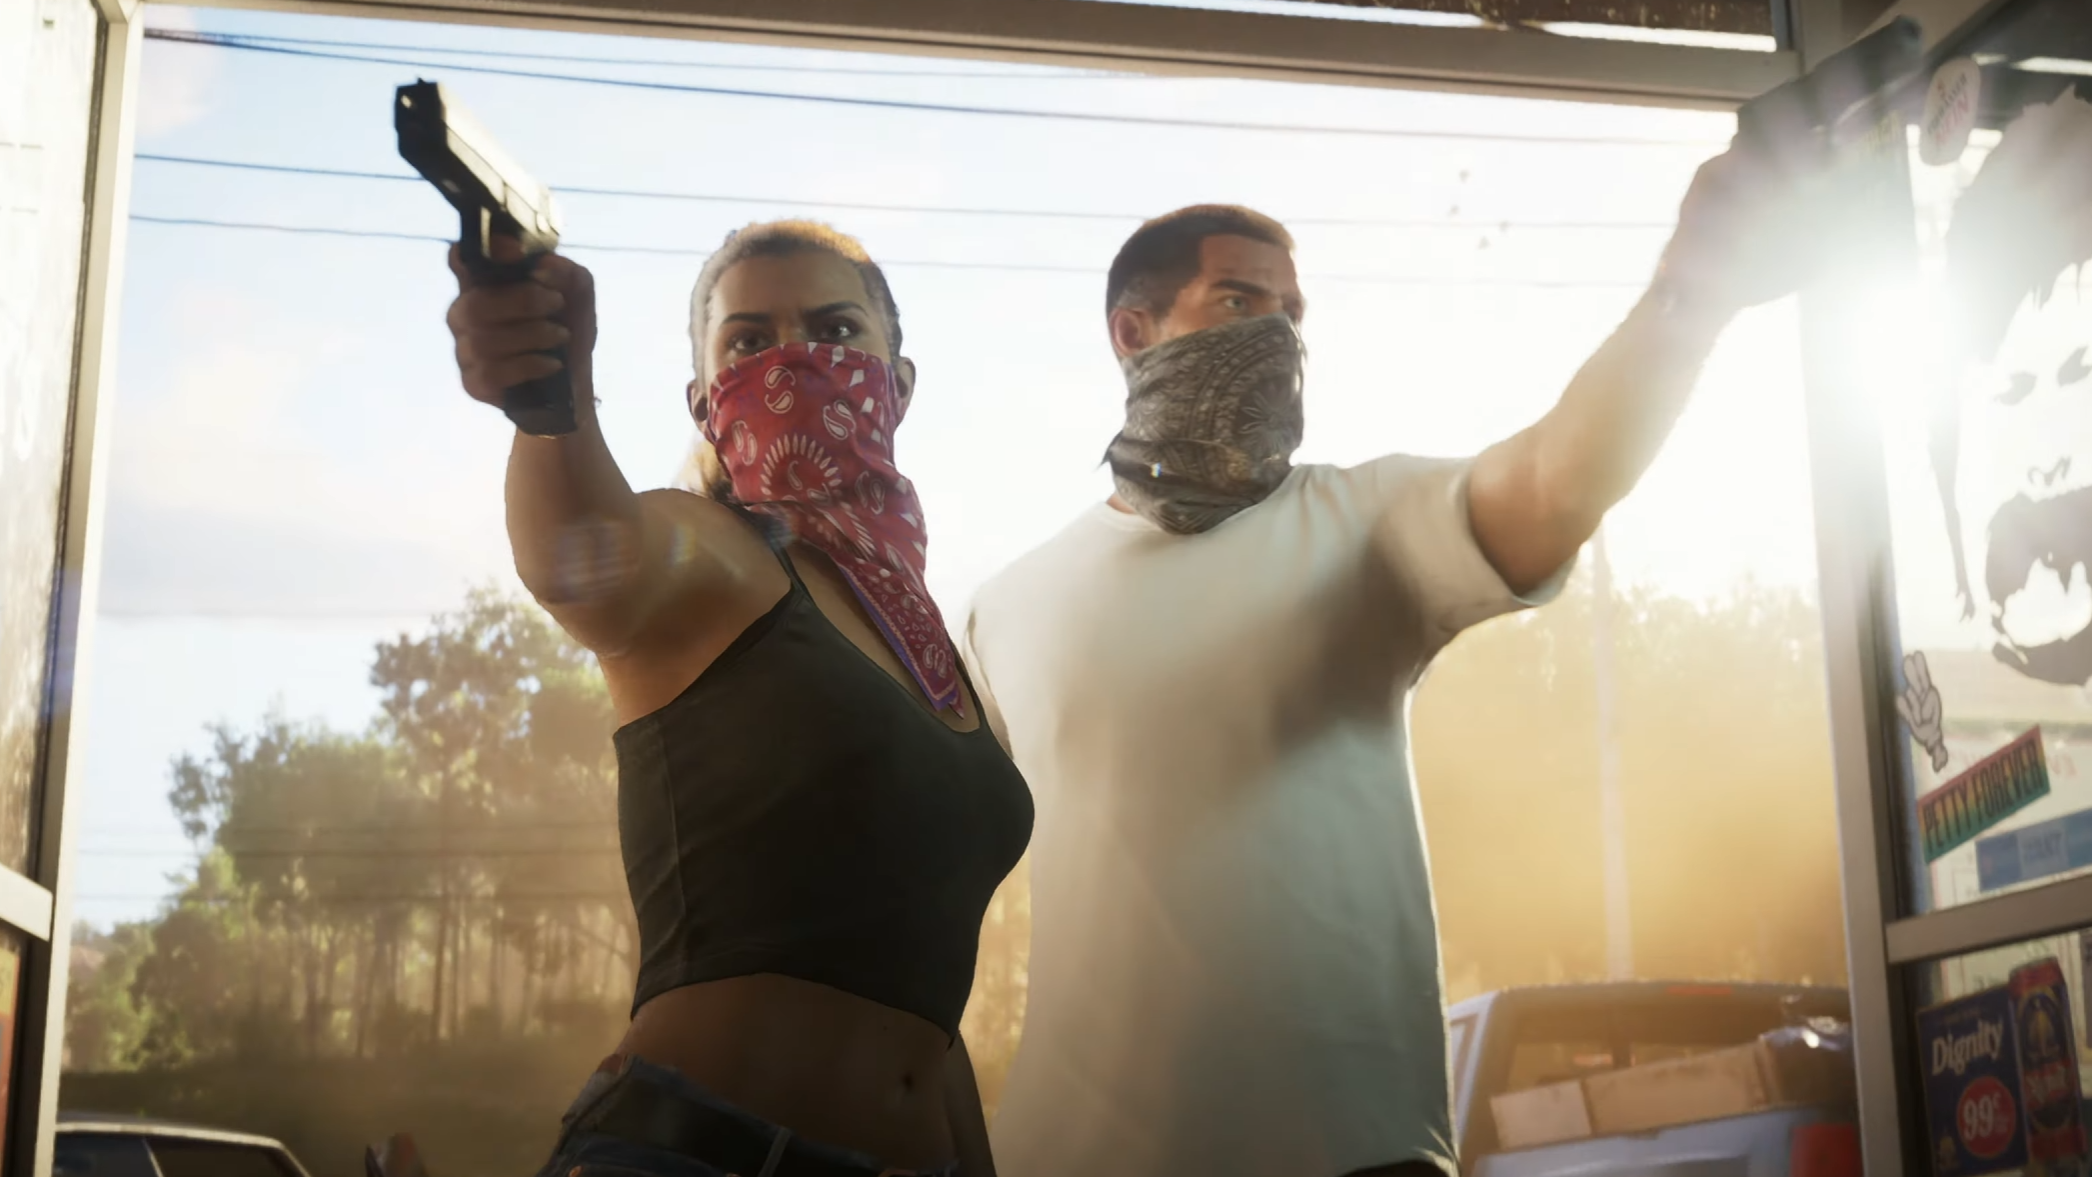 Rockstar drops GTA VI trailer early following several leaks